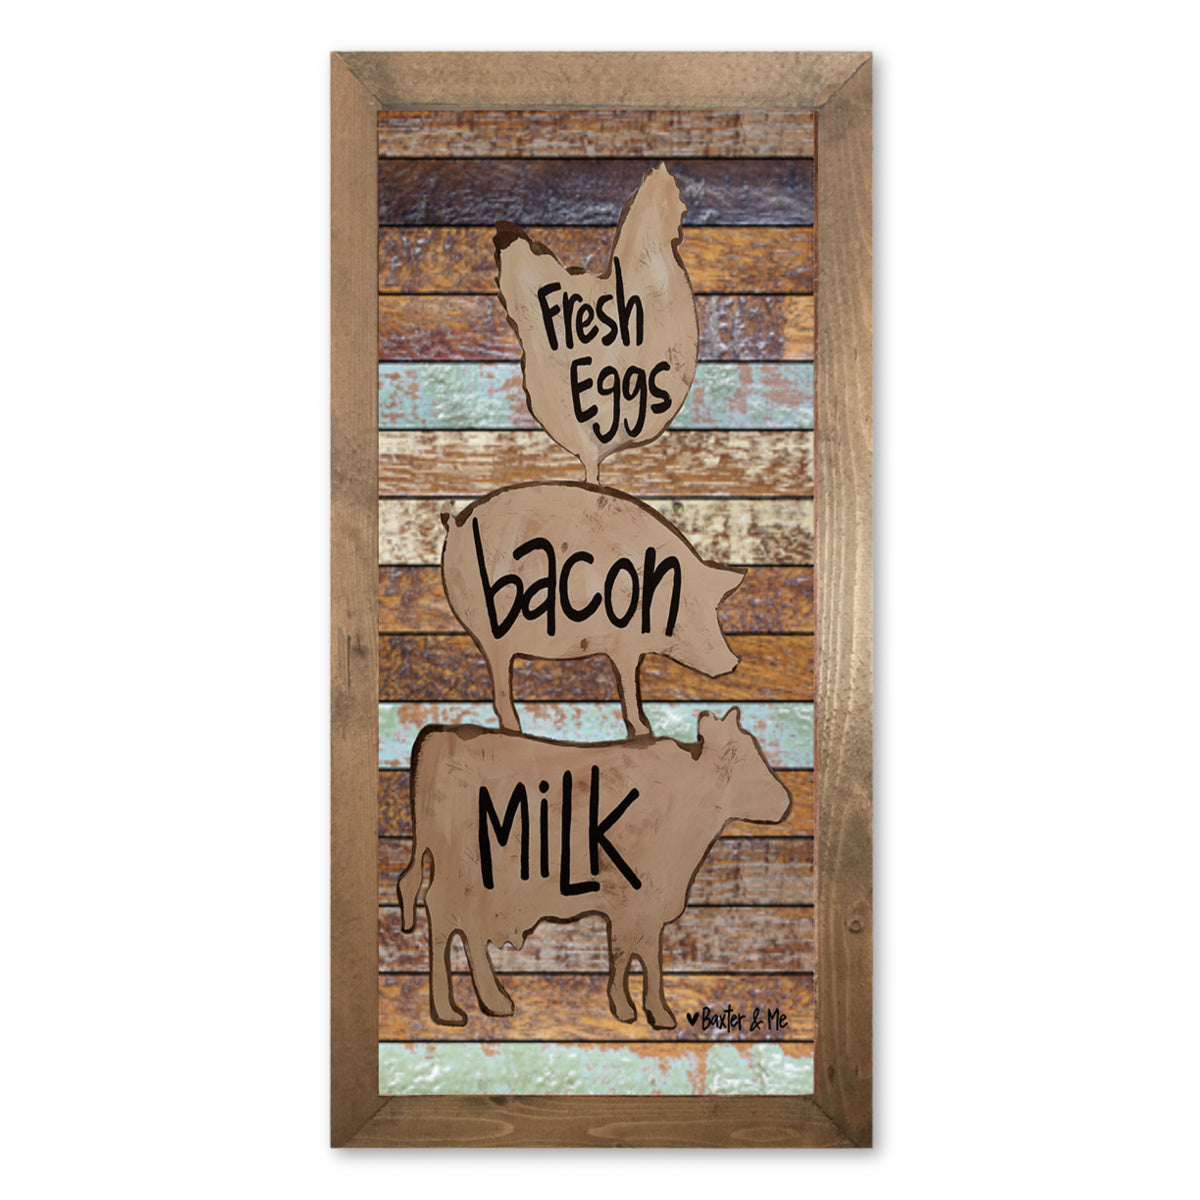 Eggs Bacon & Milk 12" x 24" - Framed Art